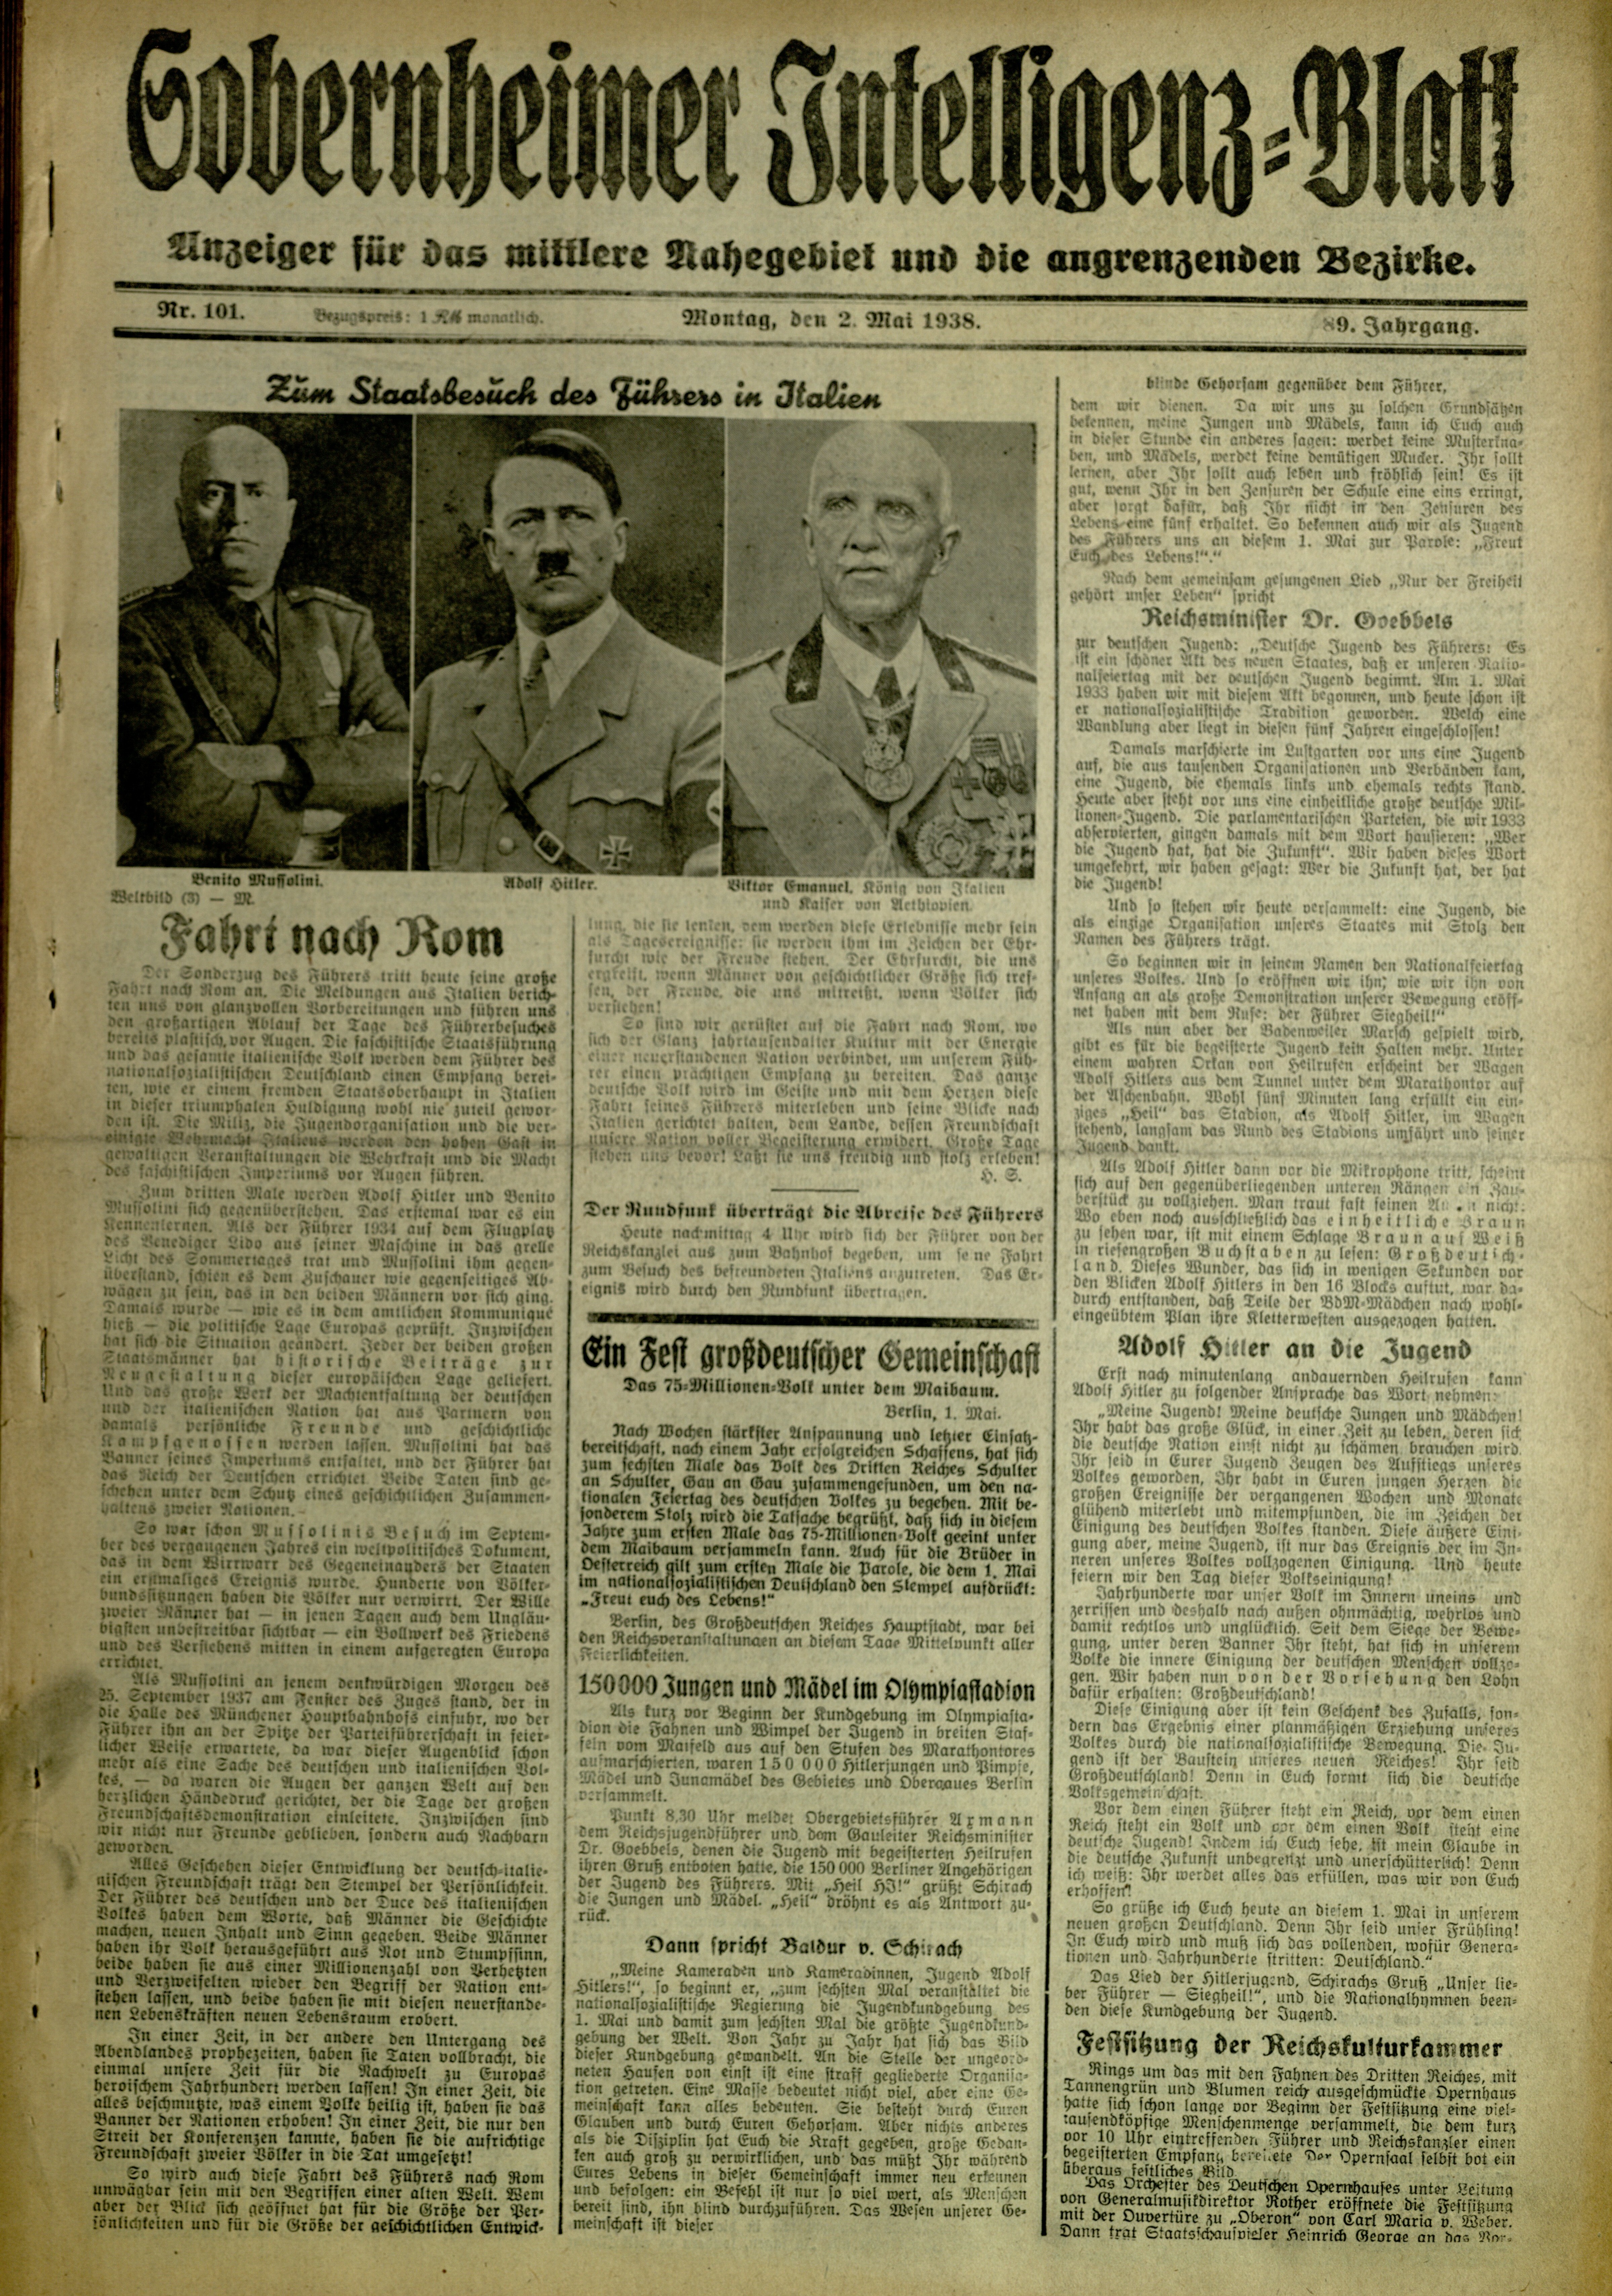 Zeitung: Sobernheimer Intelligenzblatt; Mai 1938, Jg. 88 Nr. 101 (Heimatmuseum Bad Sobernheim CC BY-NC-SA)